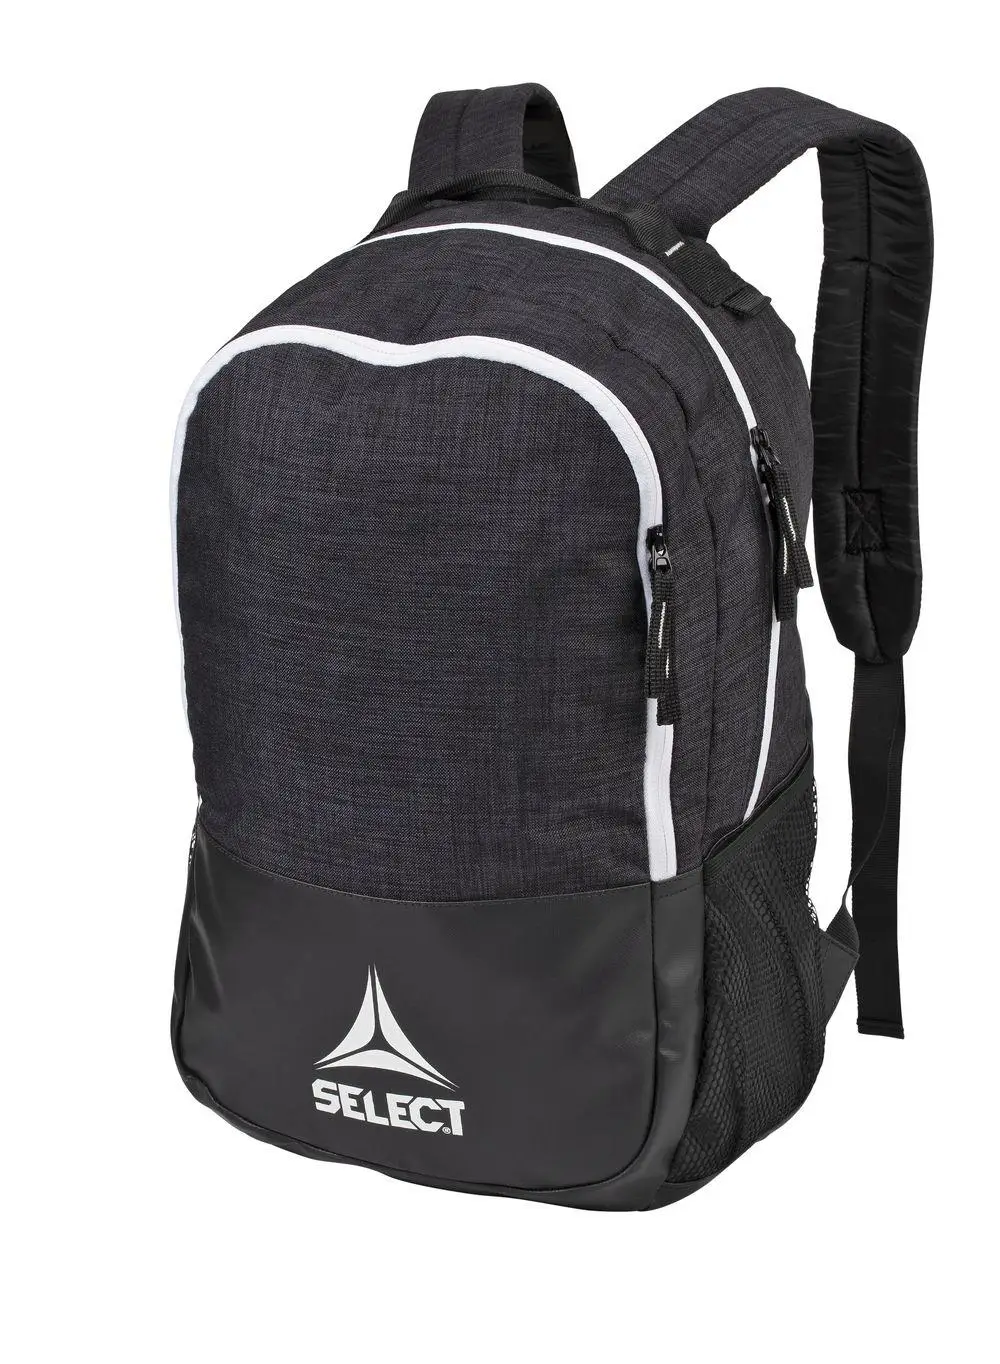 Ранець SELECT Lazio backpack (010) чорний, 25L